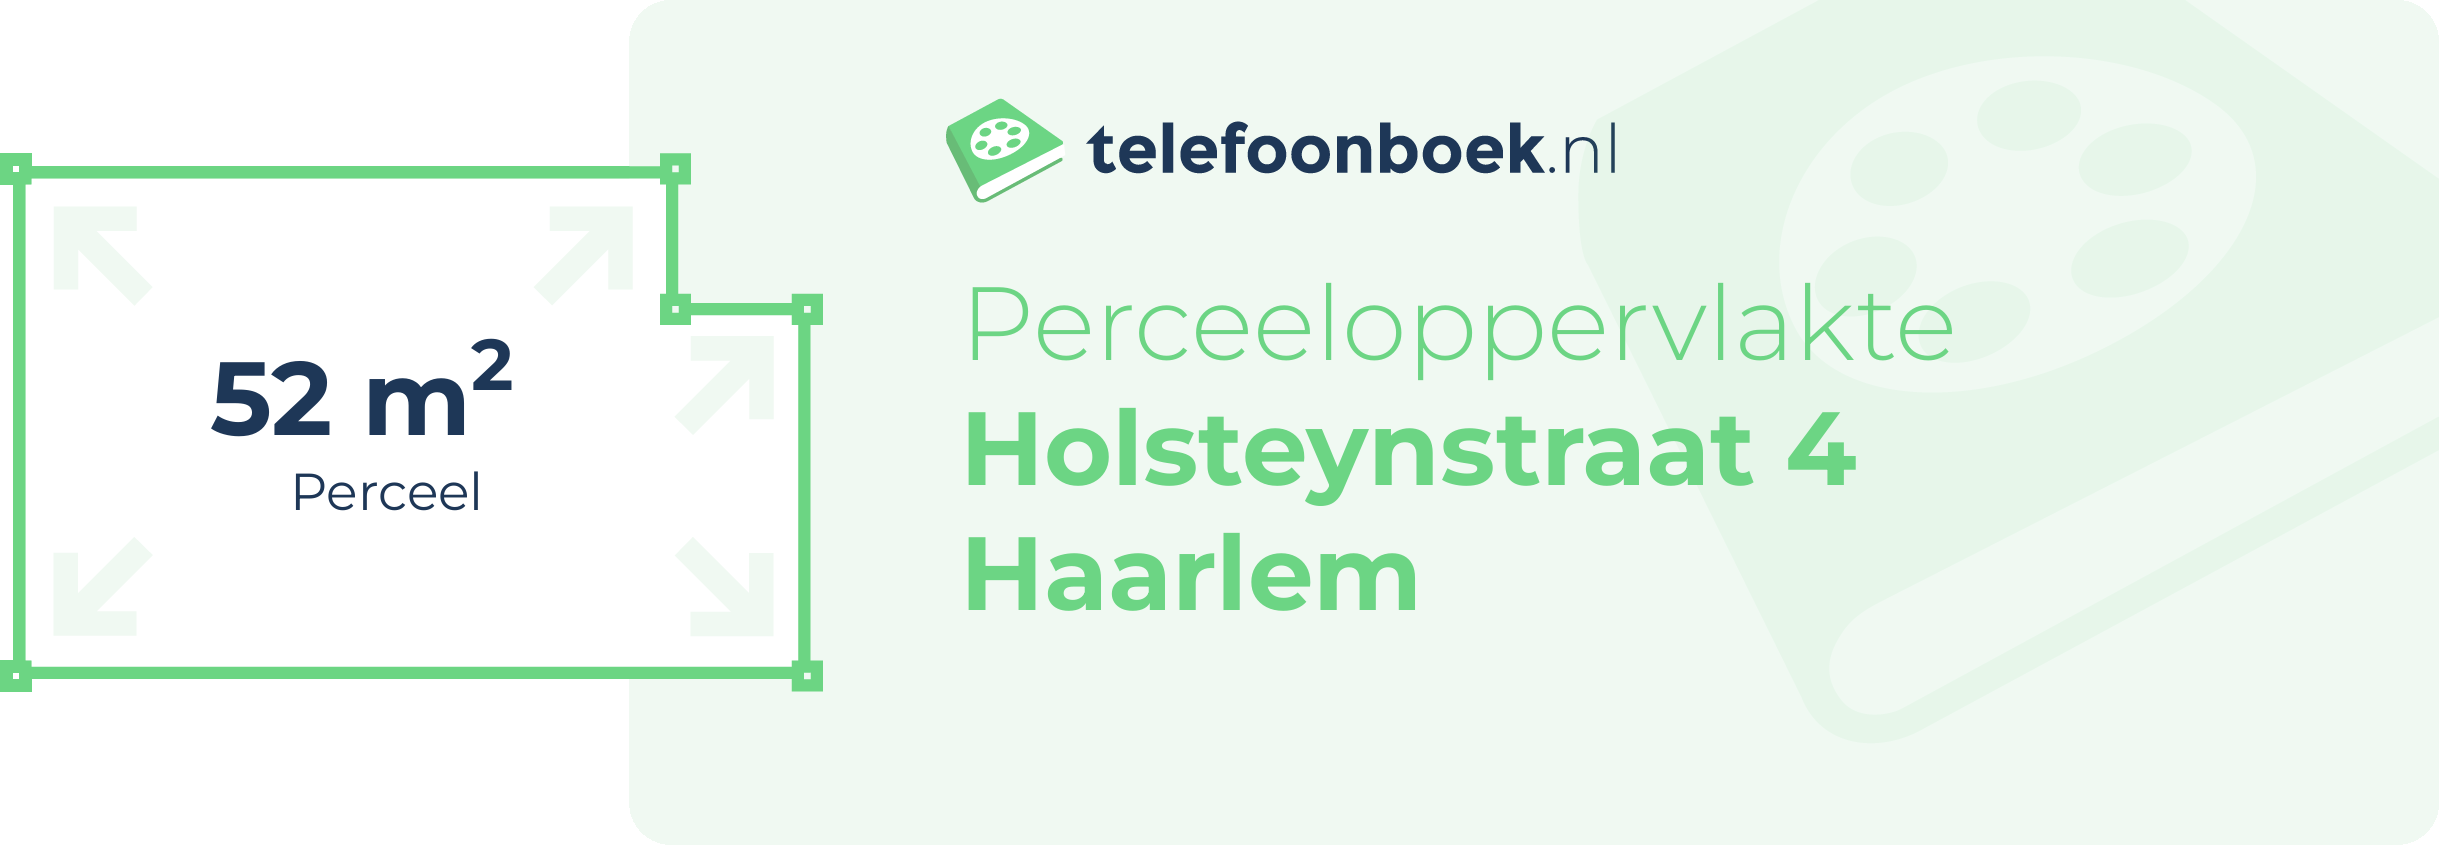 Perceeloppervlakte Holsteynstraat 4 Haarlem